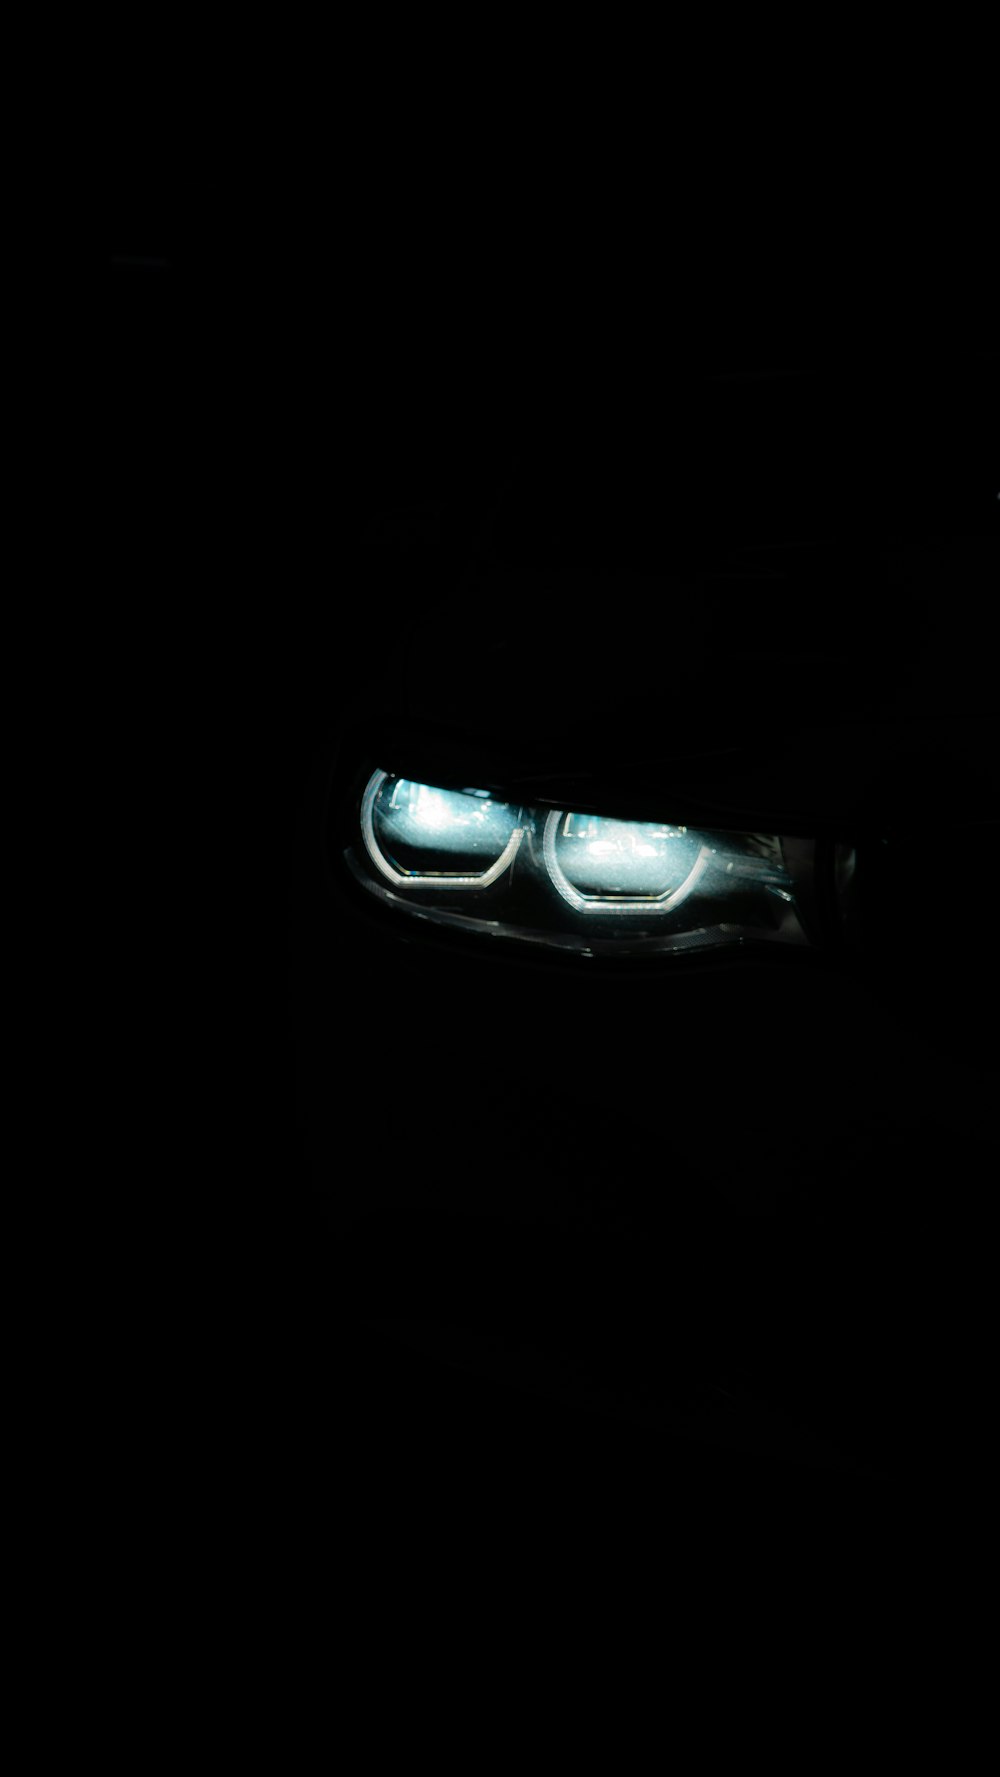 Les phares d’une voiture dans le noir